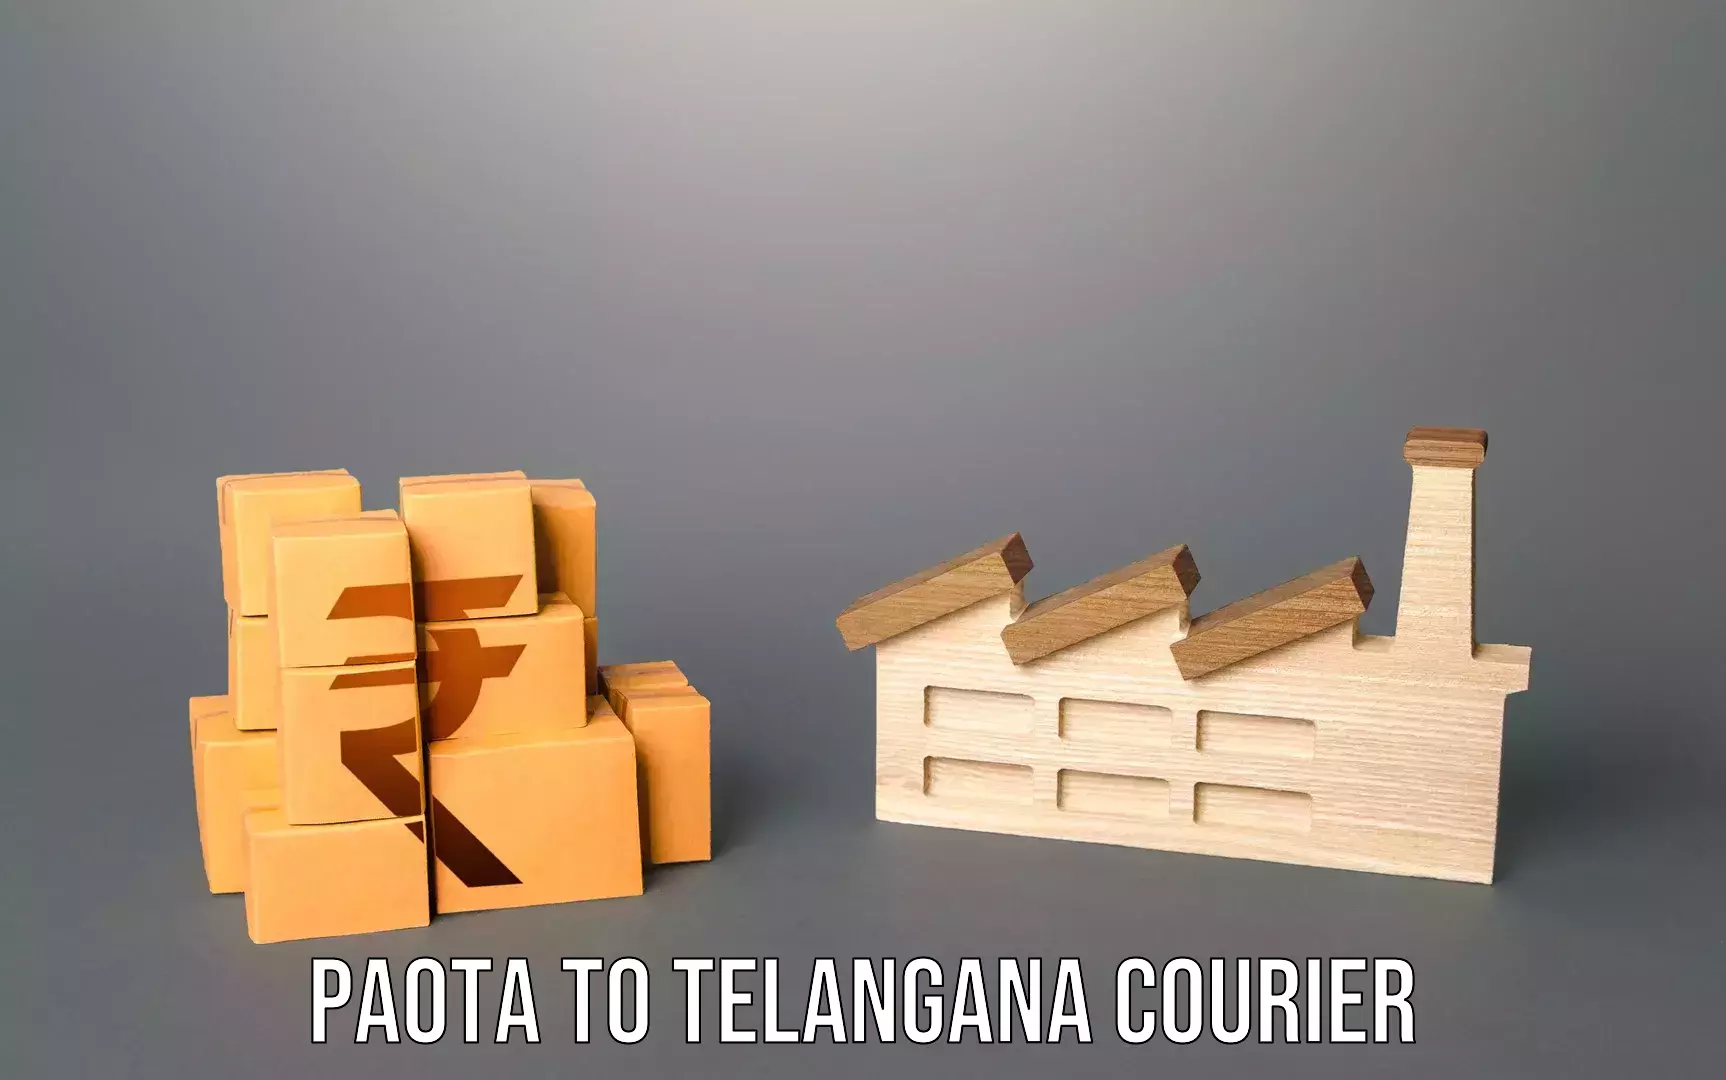 Luggage forwarding service Paota to Kothakota